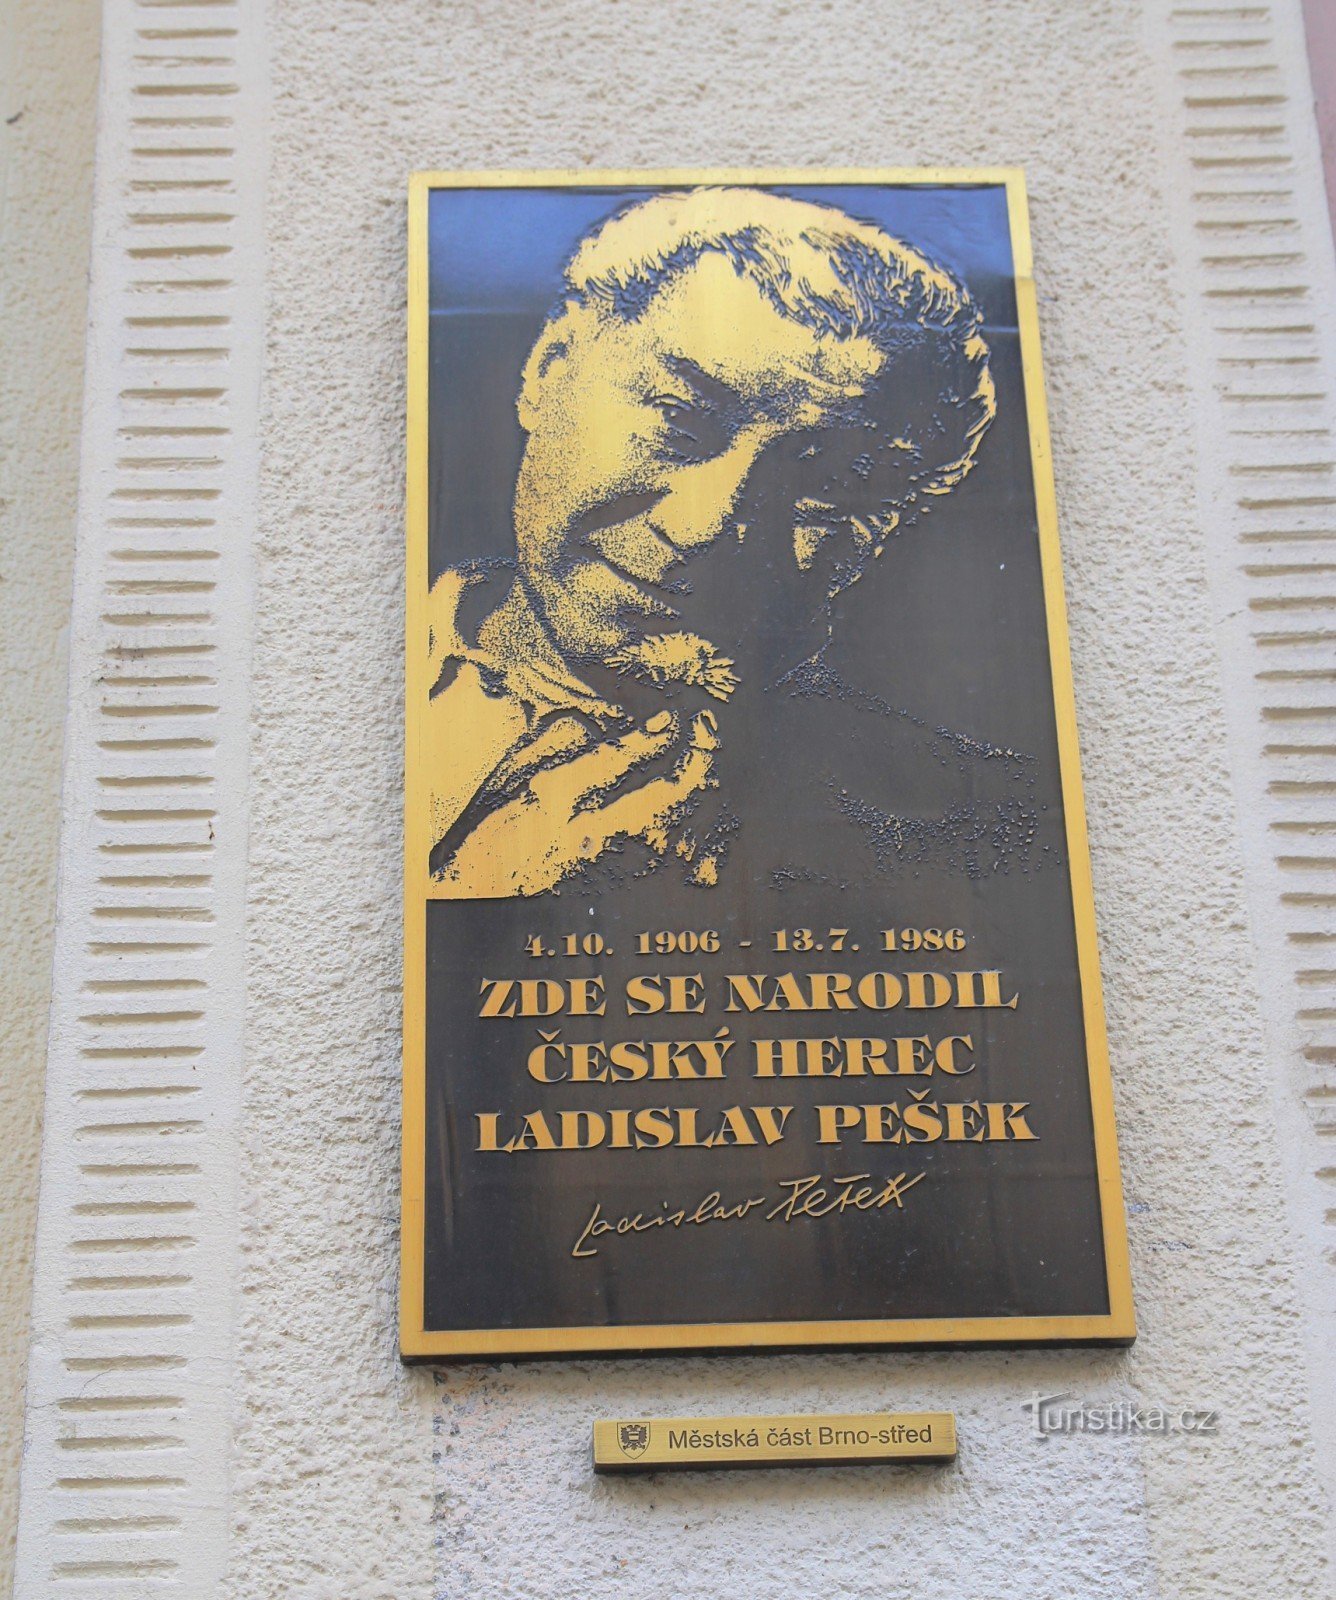 Placă memorială a lui Ladislav Pešek